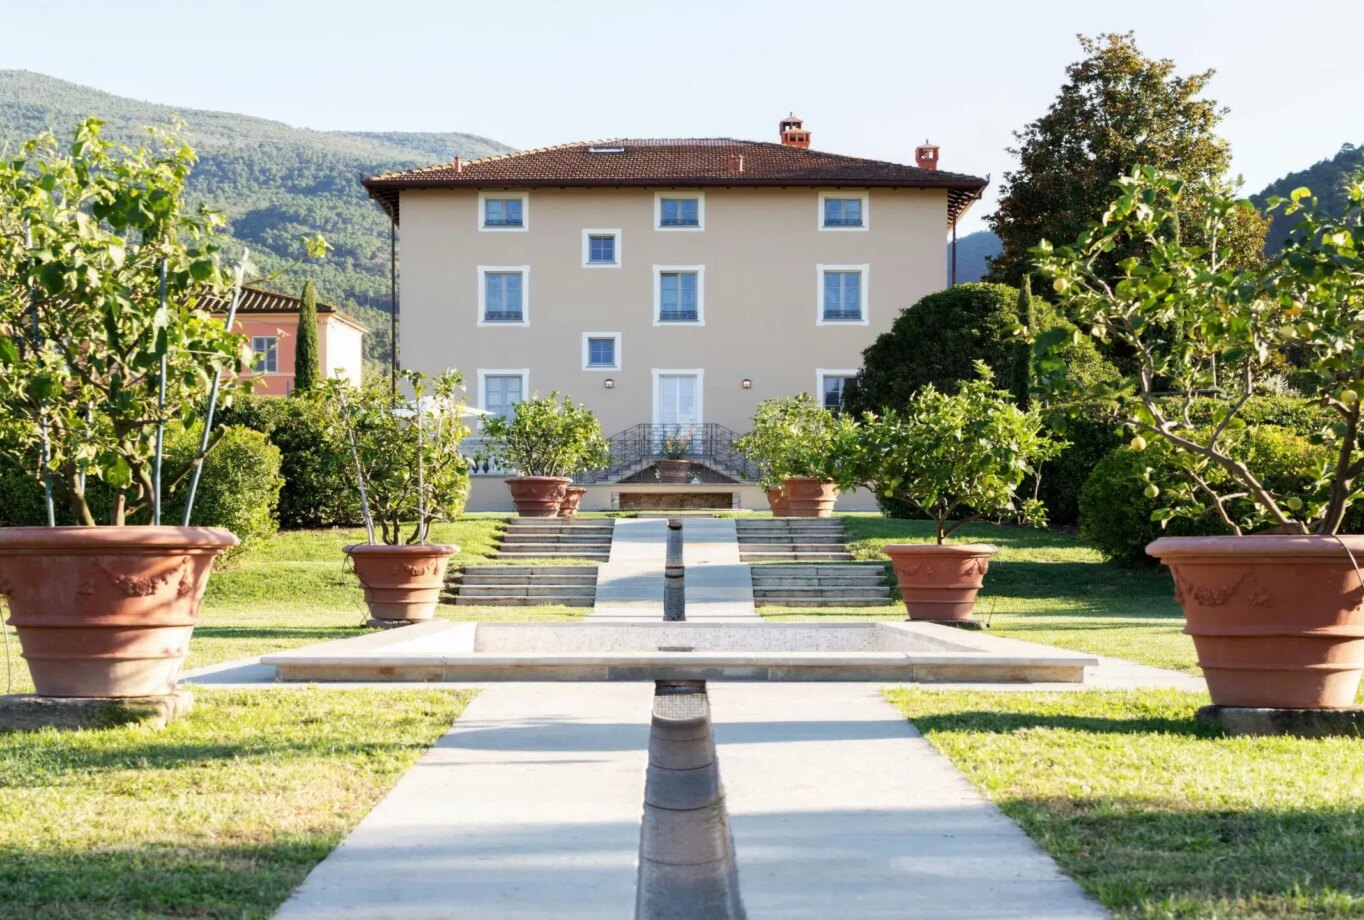 Tuscany Villas for Rent Villa Marie Capannori Tuscany